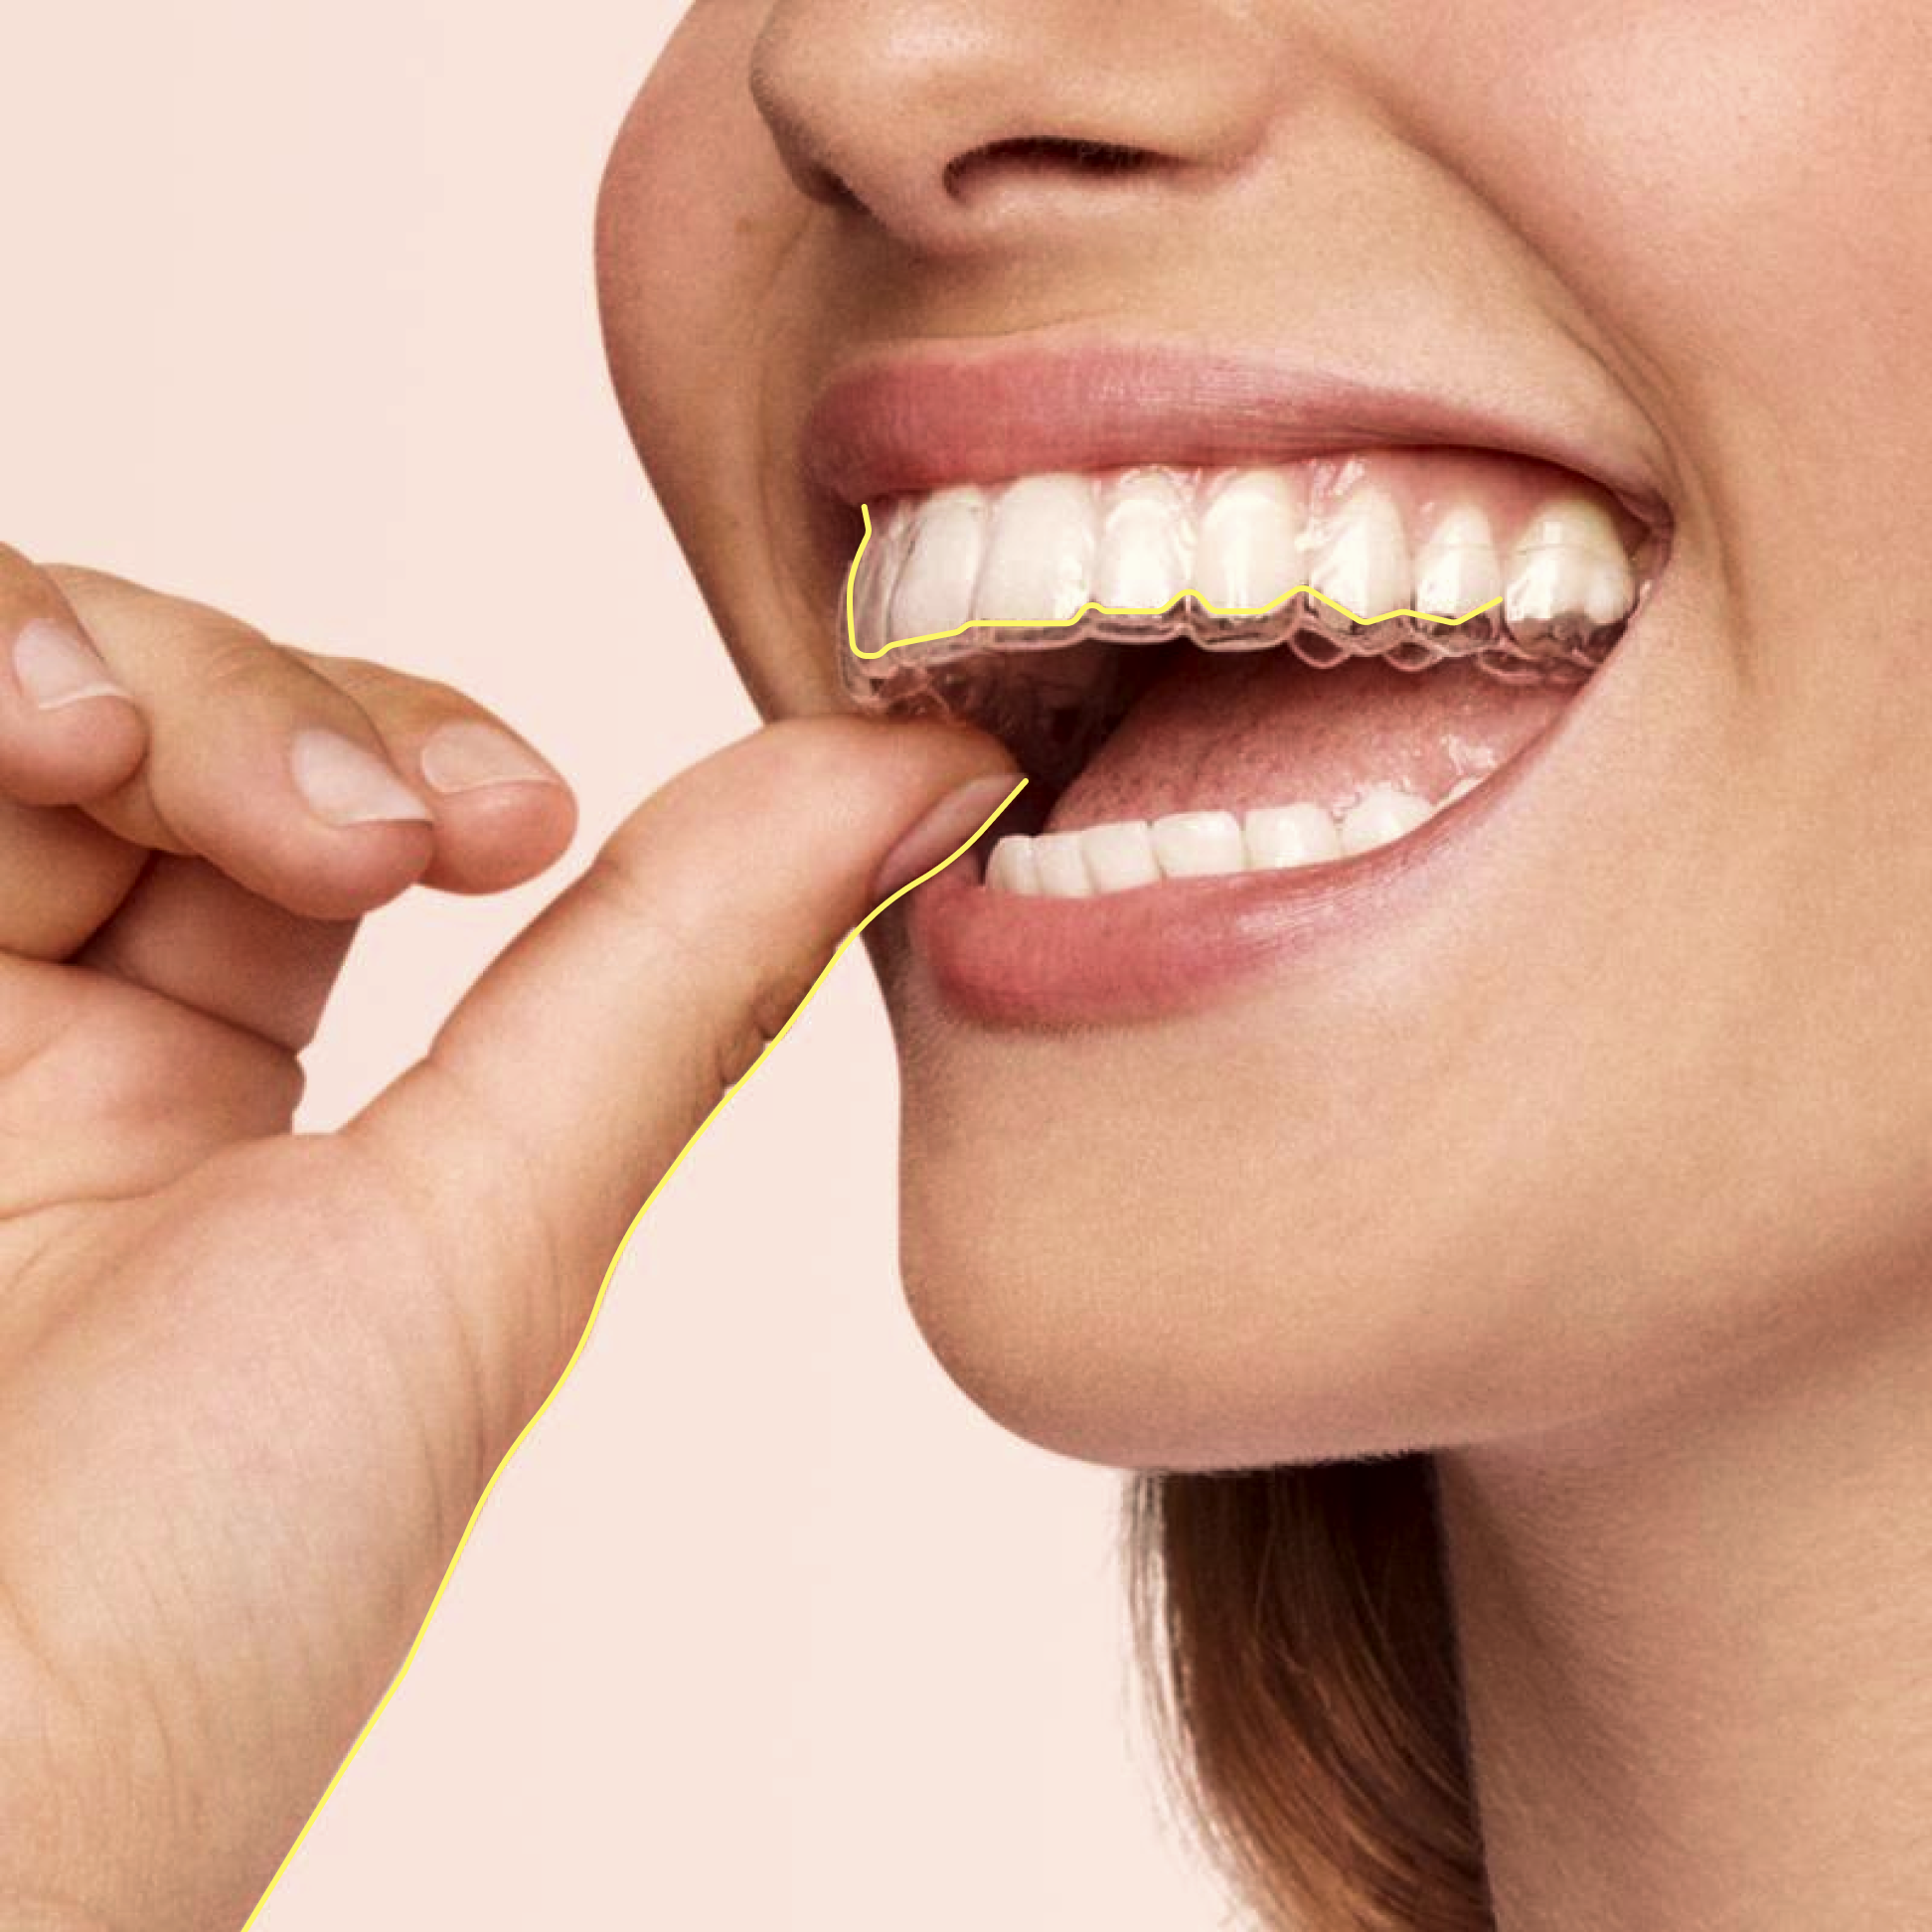 Eine Frau lächelt und zeigt gerade Zähne, in einer Hand hält sie eine durchsichtige Zahnschiene